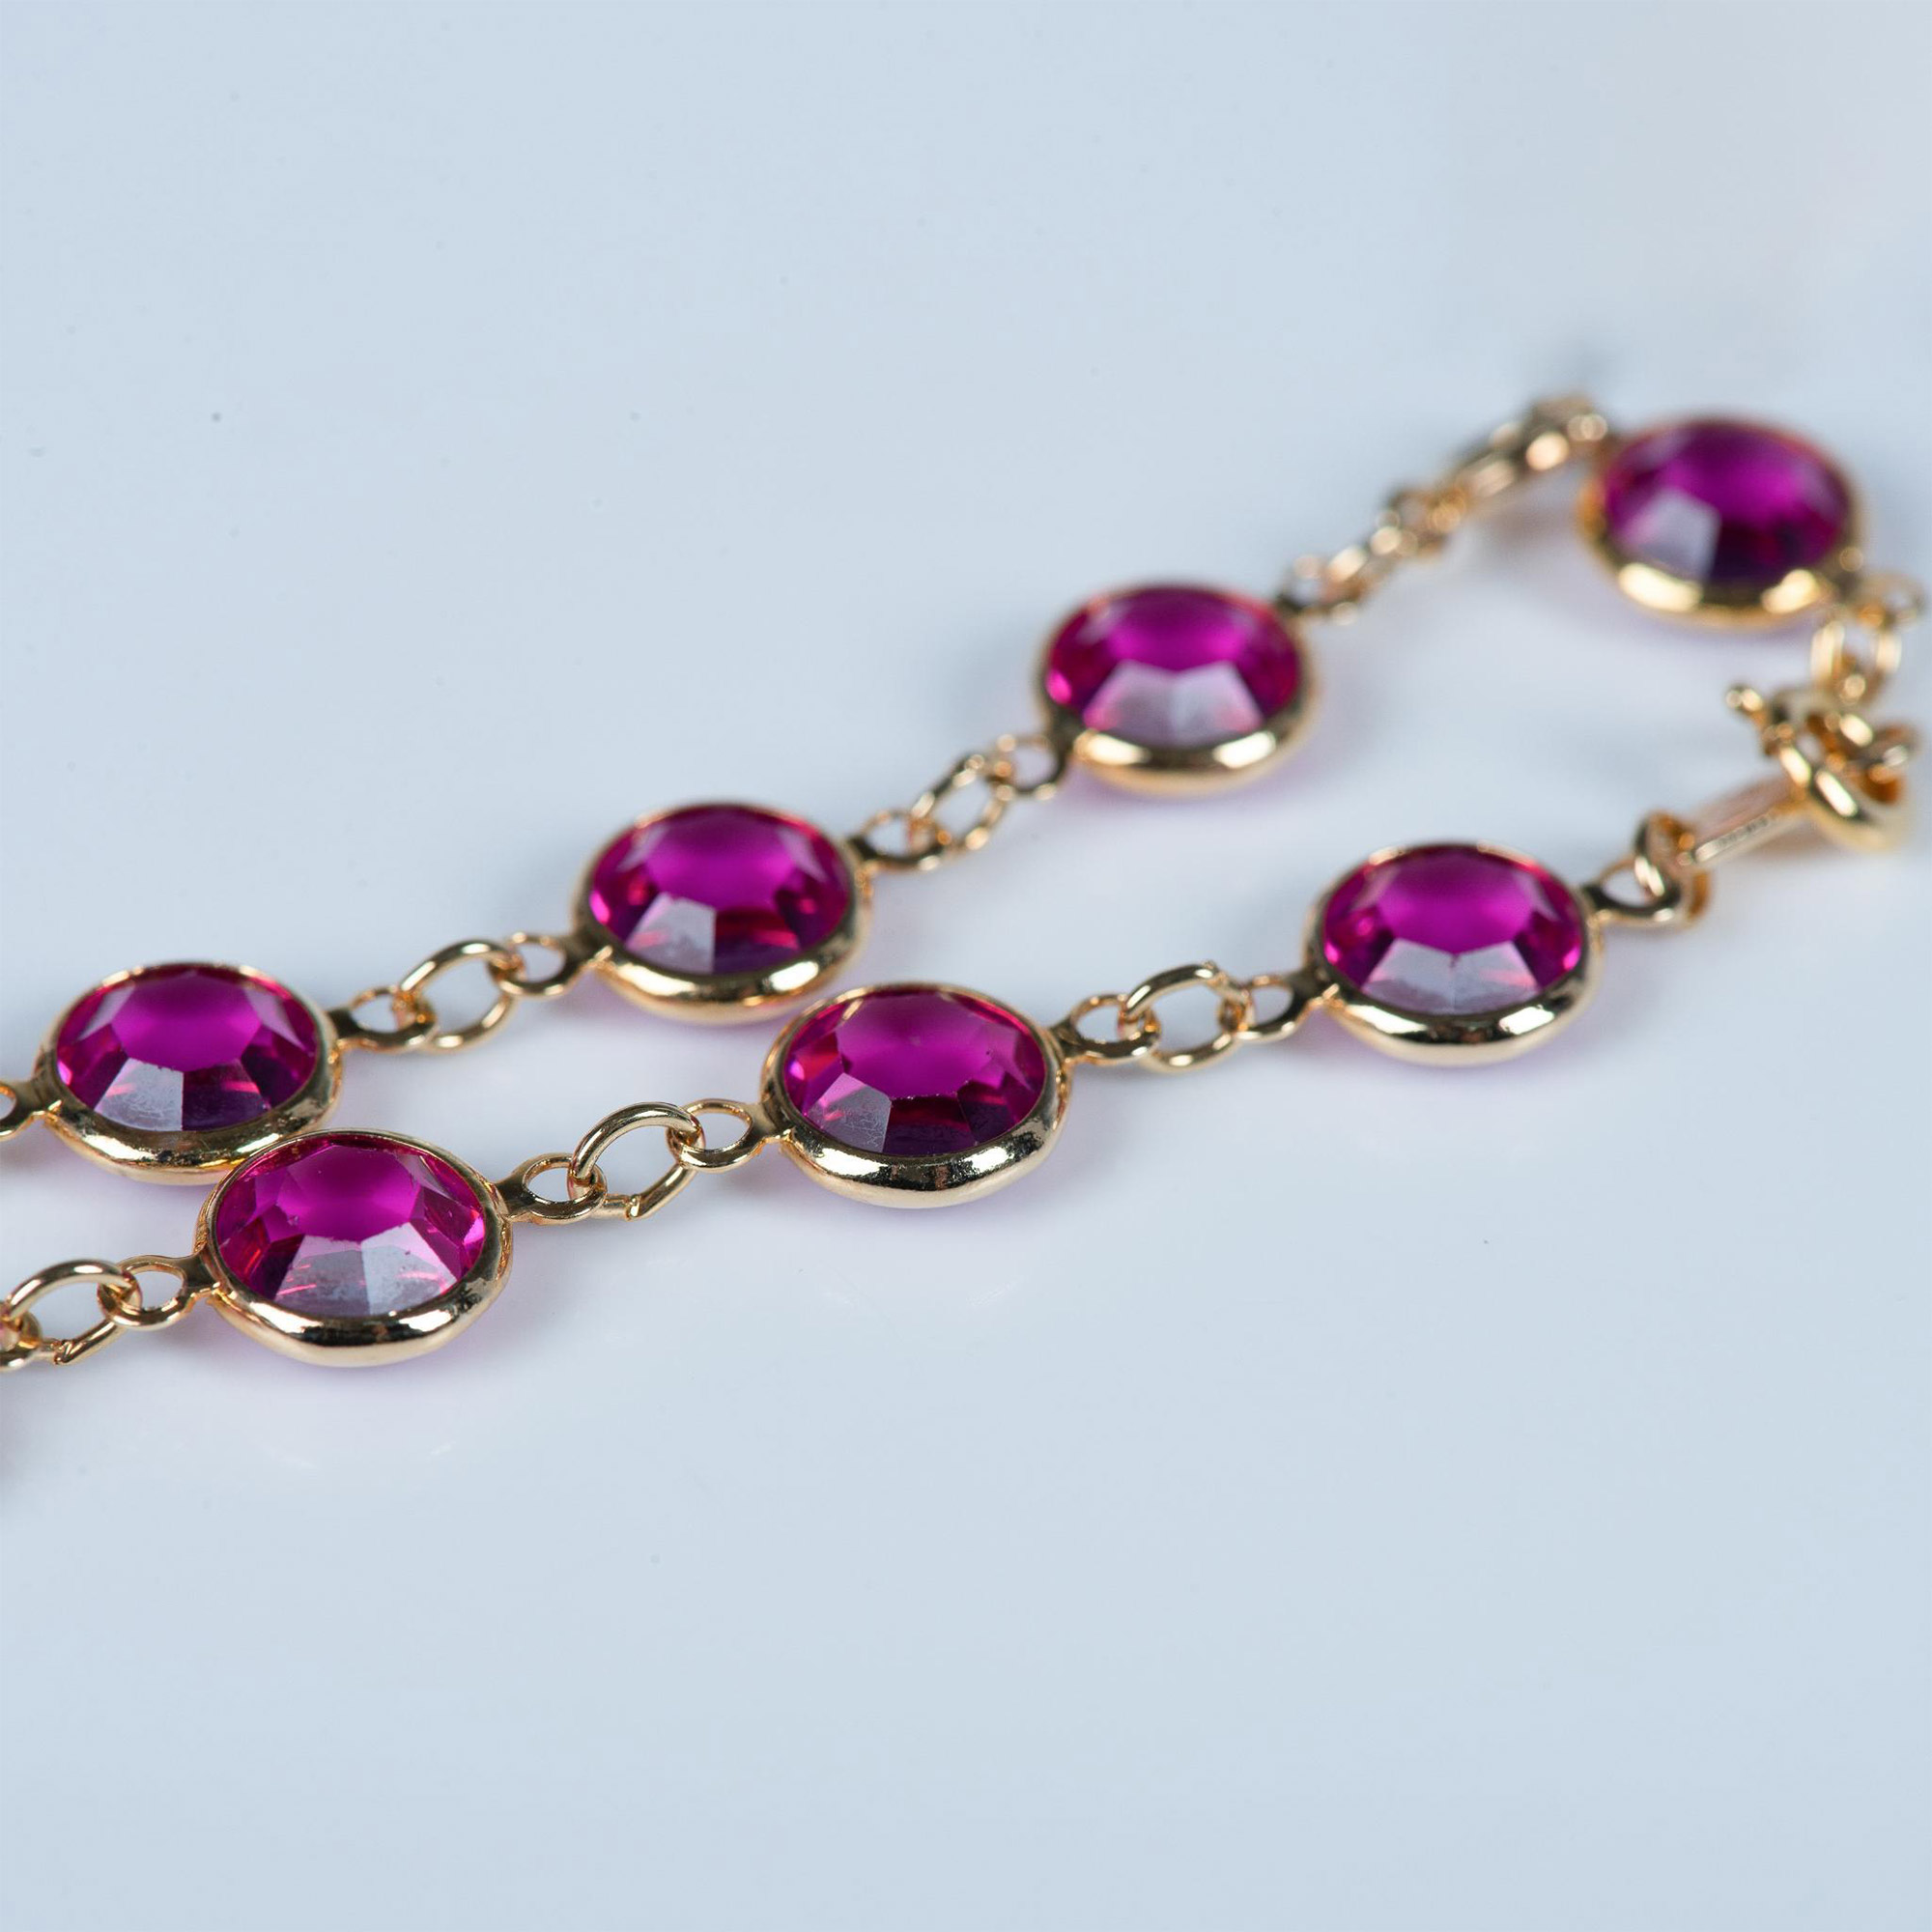 3pc Swarovski Teal, Pink & Clear Crystal Link Bracelets - Image 4 of 5